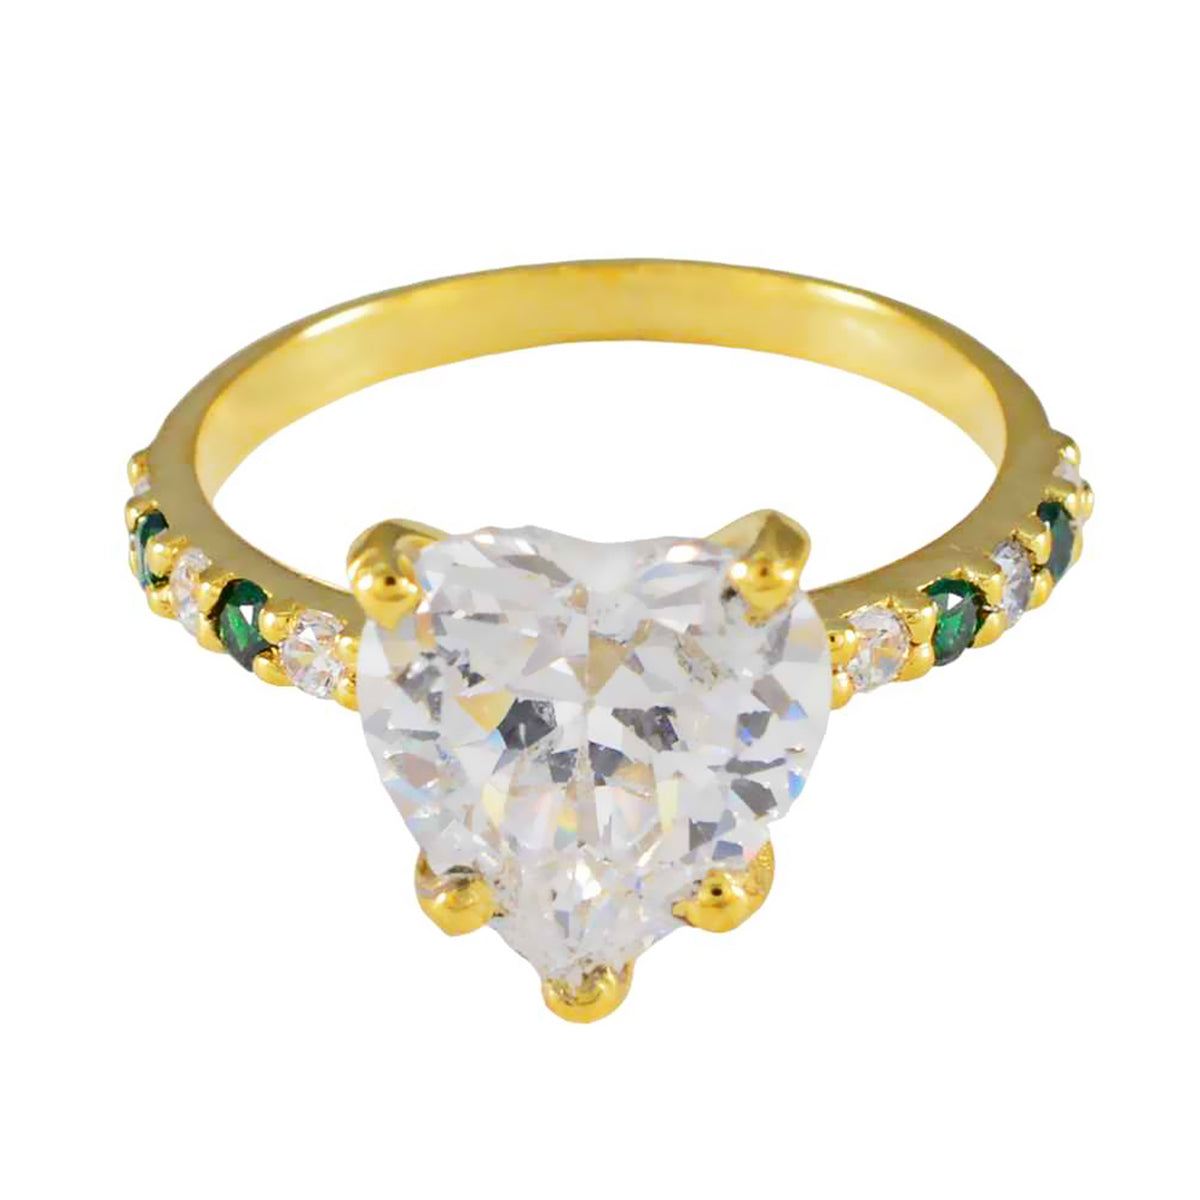 Riyo a granel anillo de plata con chapado en oro amarillo esmeralda cz piedra en forma de corazón ajuste de punta joyería elegante anillo de cóctel